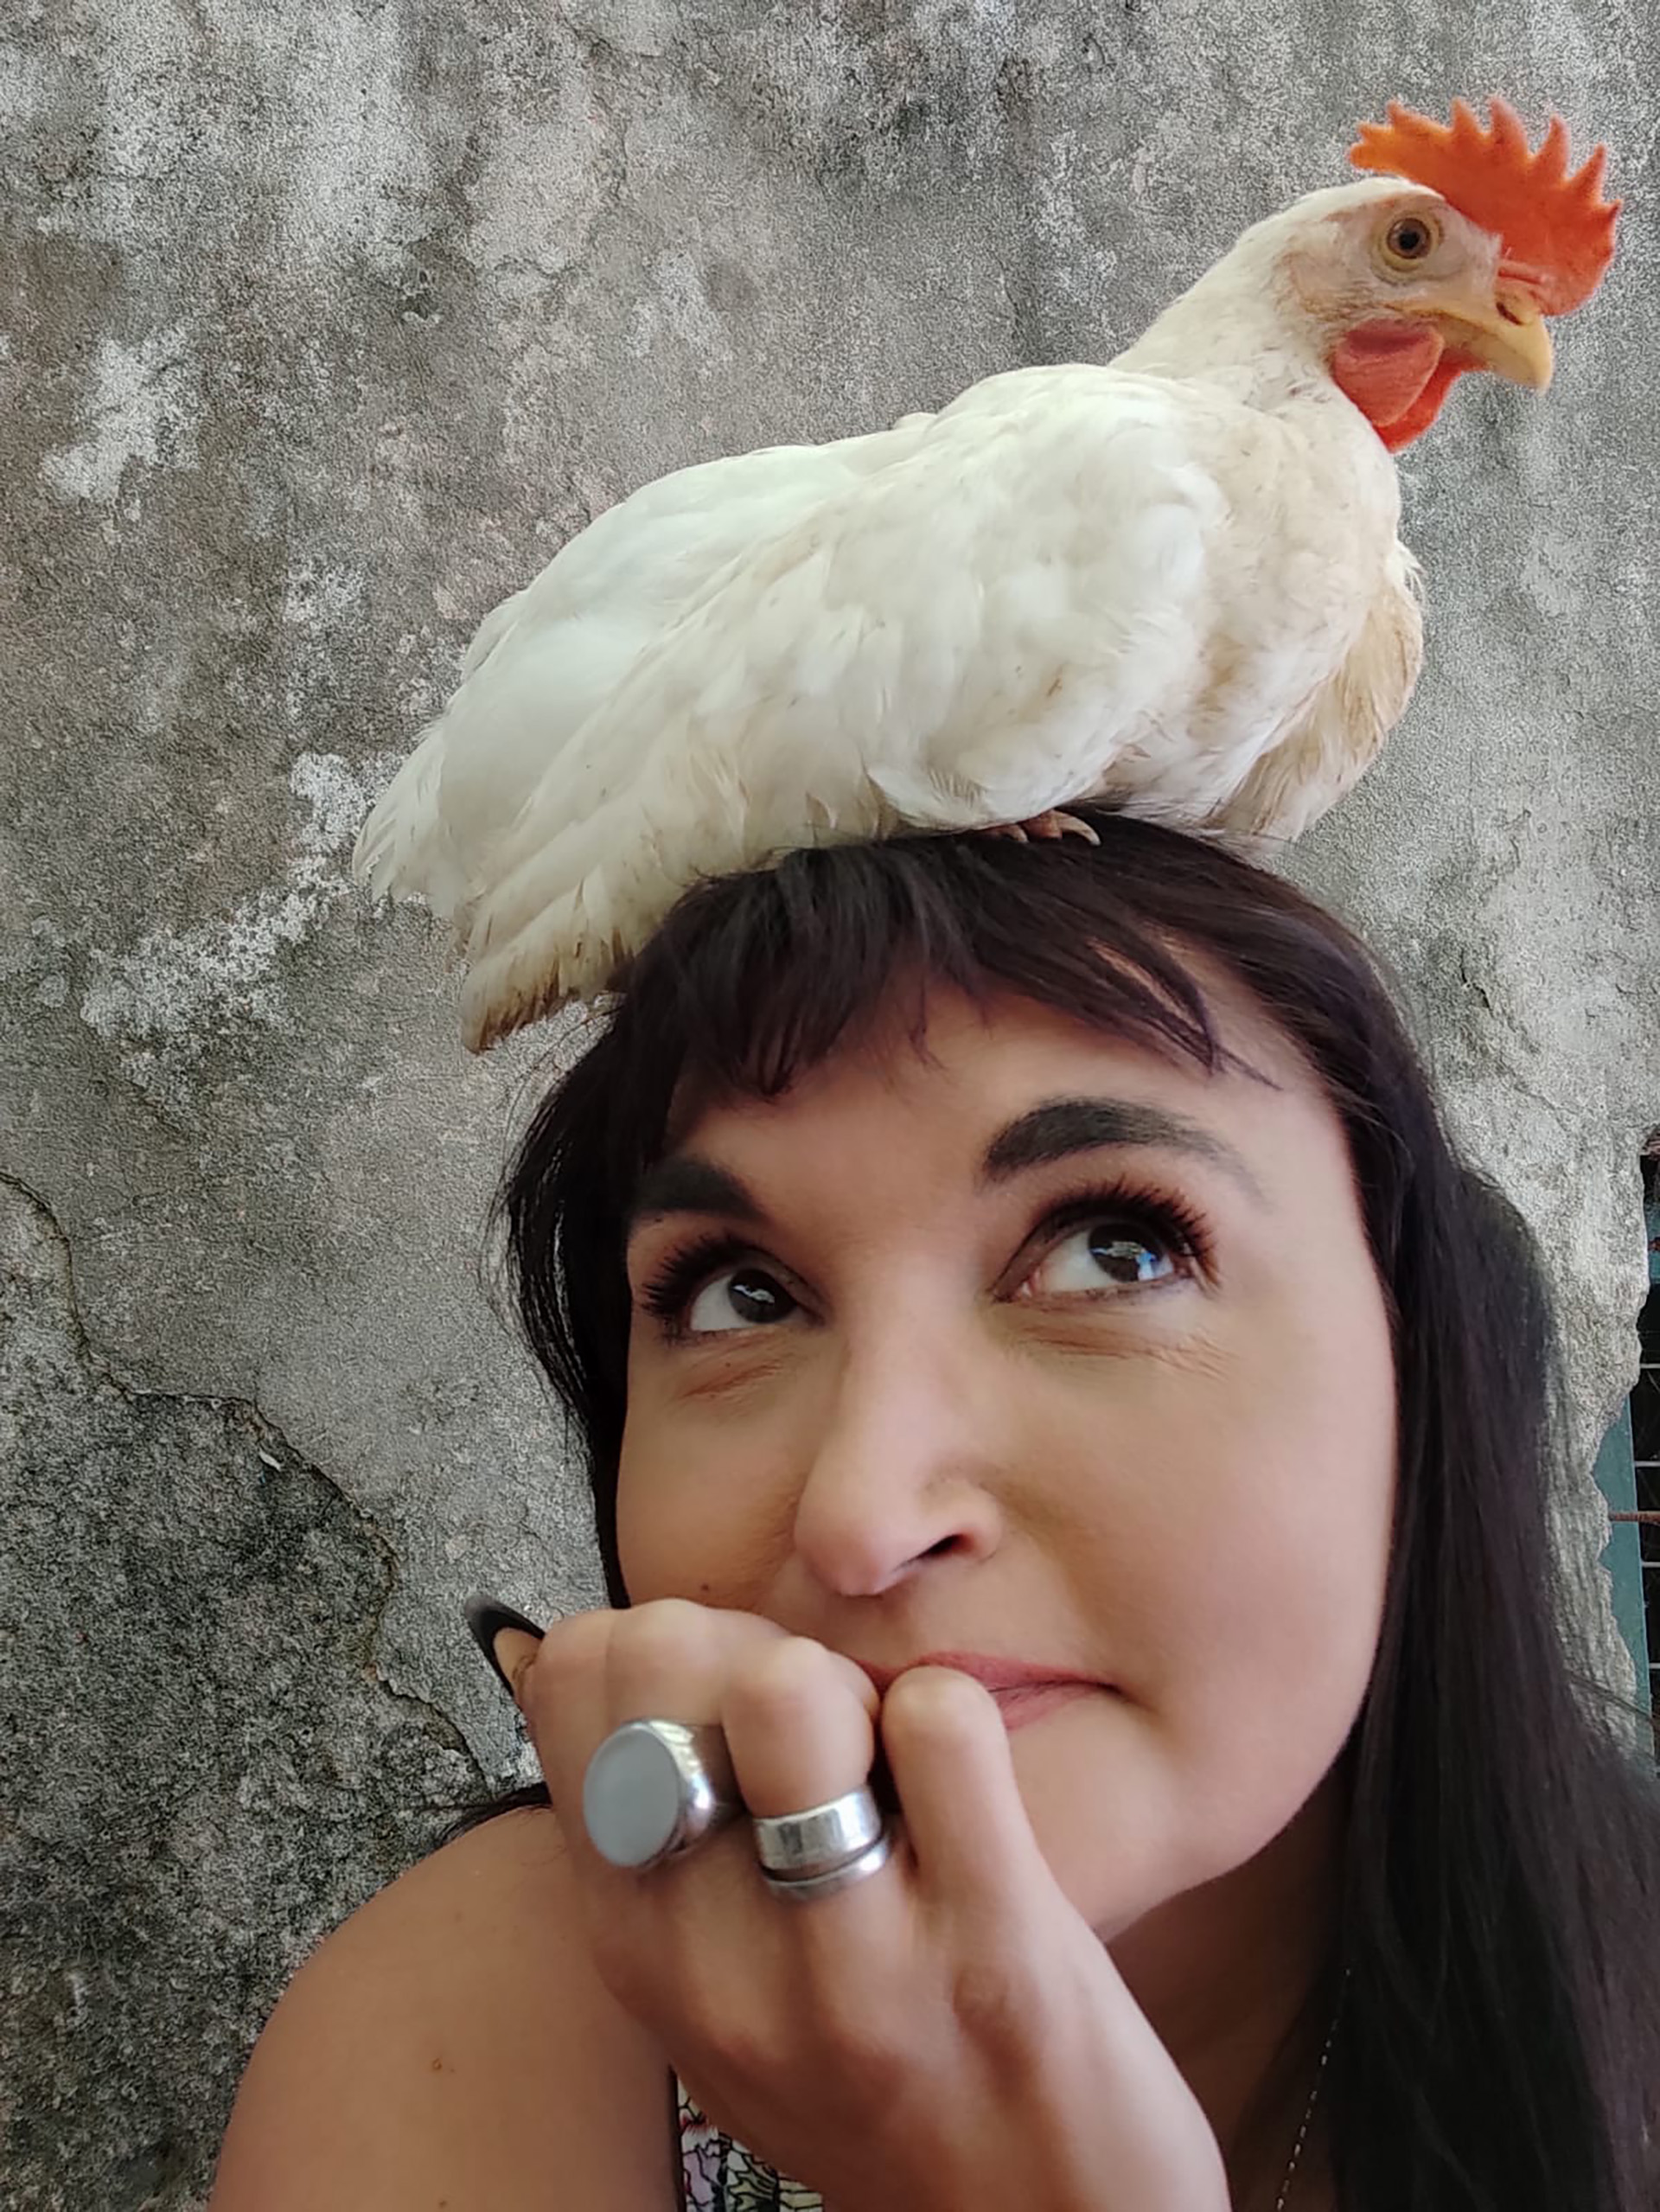 Roxana Barrionuevo es una de las activistas que rescató unas dos mil gallinas de una planta avícola que las había abandonado sin agua ni comida y les dio una nueva vida